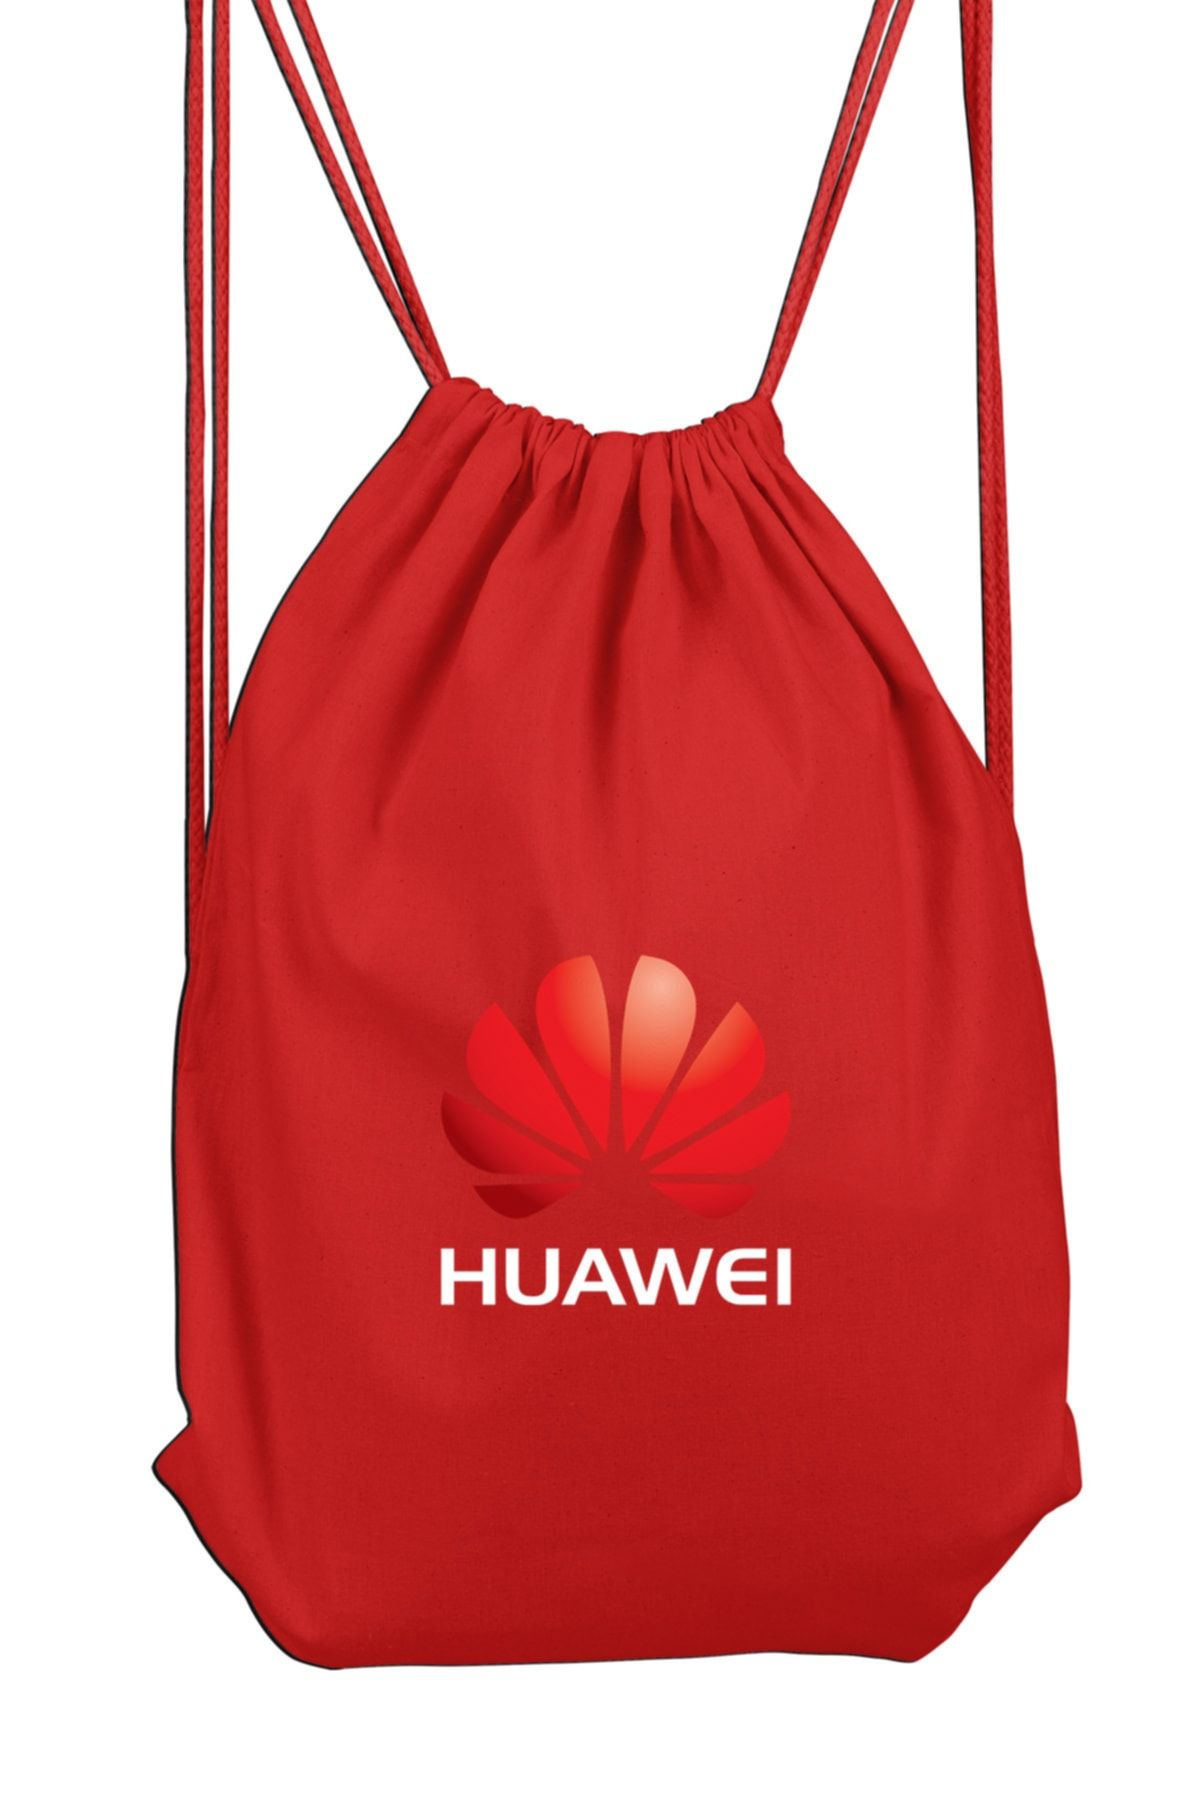 Genel Markalar Huawei Logo Spor Sırt Çantası 36x50 Cm Bll396